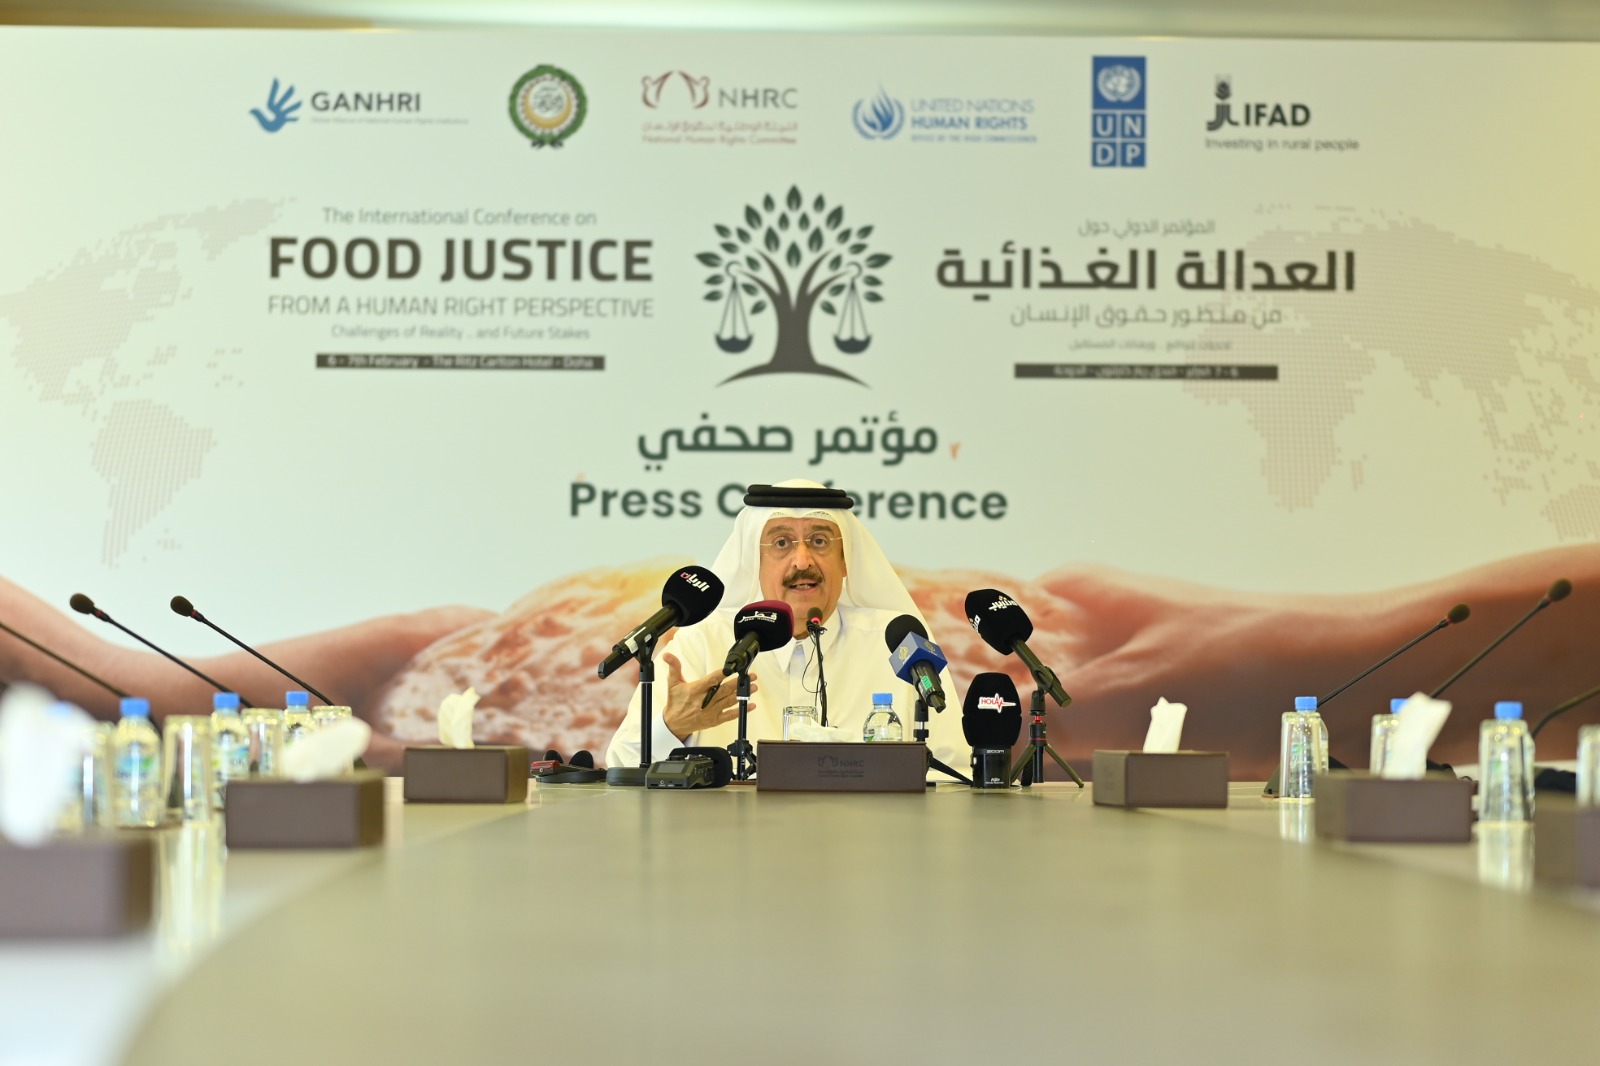 نائب رئيس اللجنة الوطنية لحقوق الإنسان: مؤتمر العدالة الغذائية يهدف لتوفير منصة حوار عالمية لتبادل المعرفة والخبرات